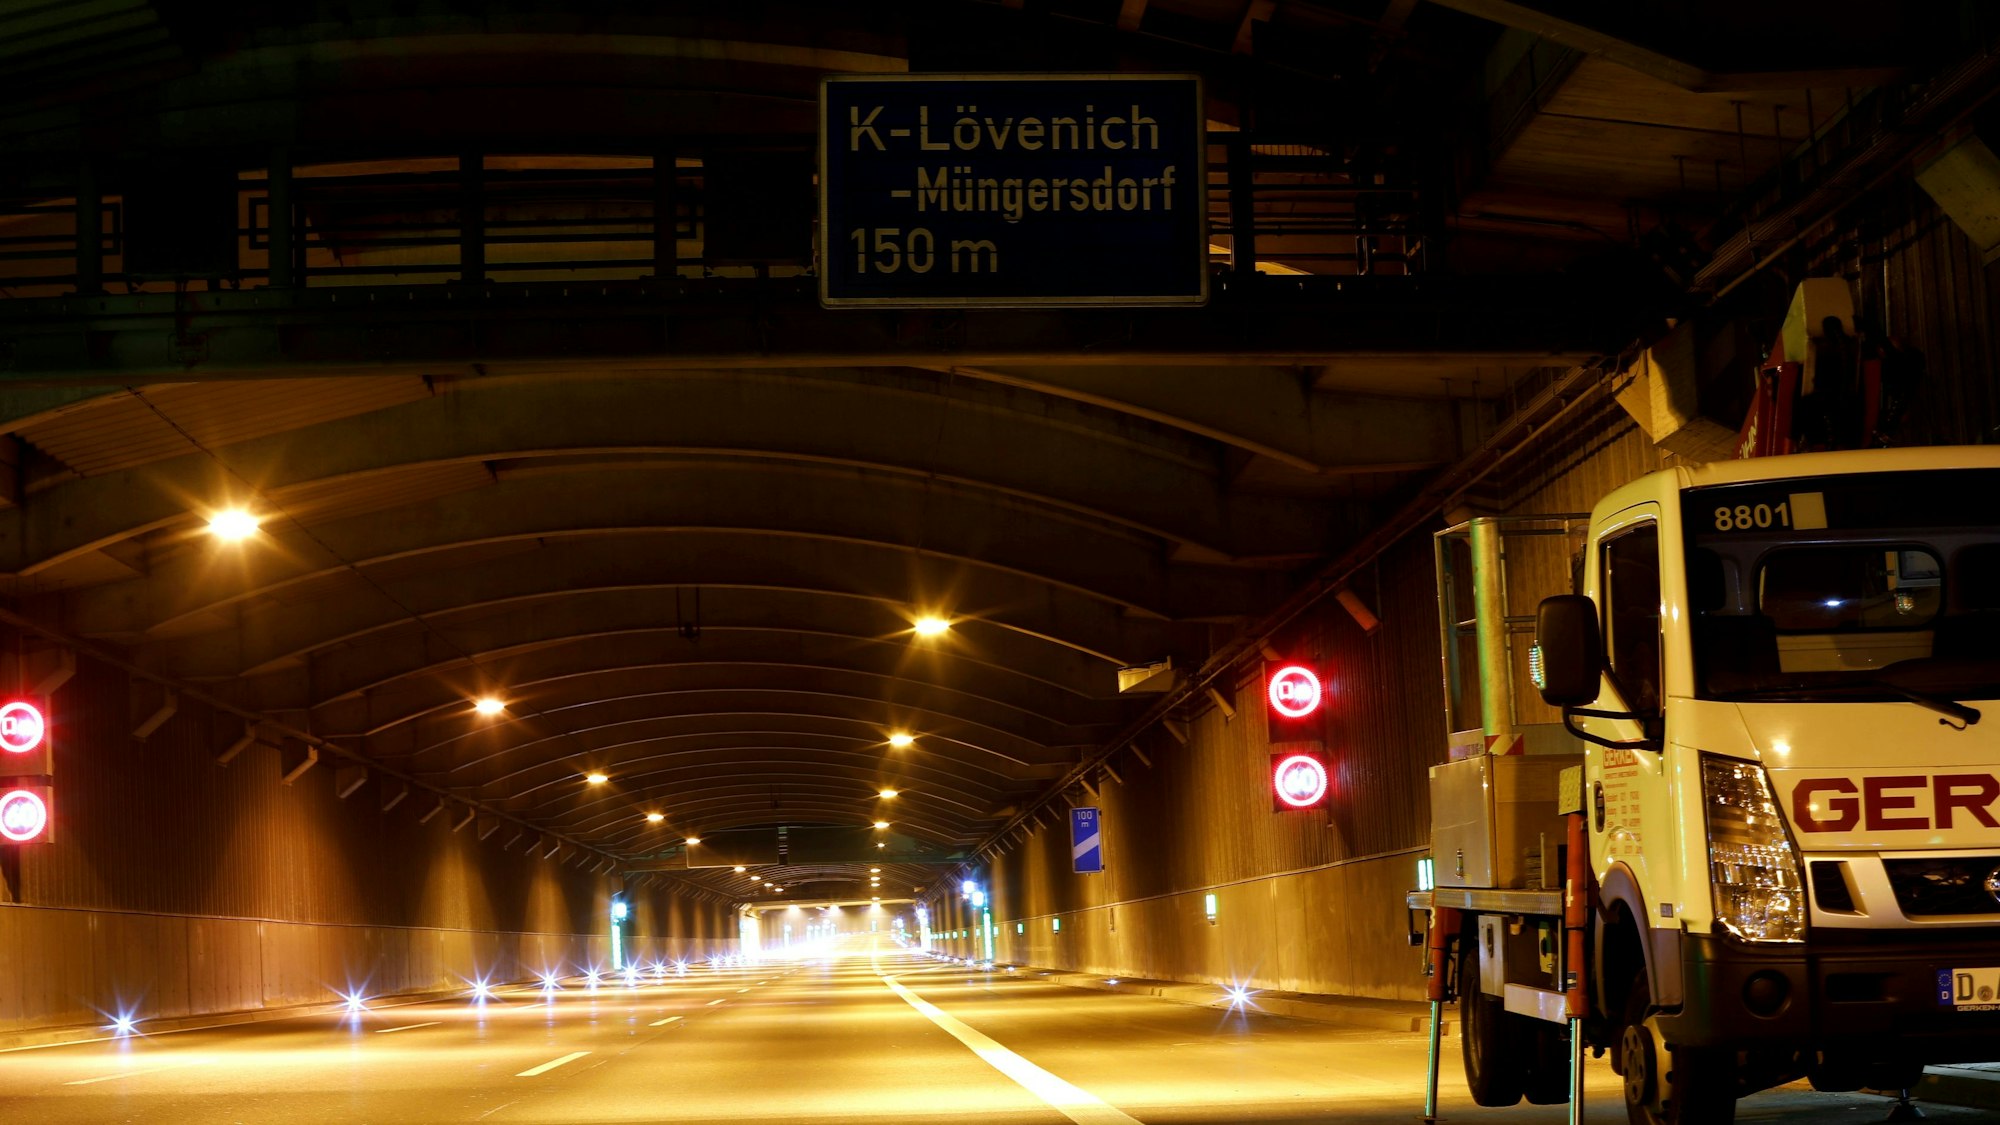 Der Autobahntunnel in Köln-Lövenich. Vorne rechts steht ein Wartungsfahrzeug. Ansonsten ist der nächtliche Tunnel aufgrund der Sperrung leer.